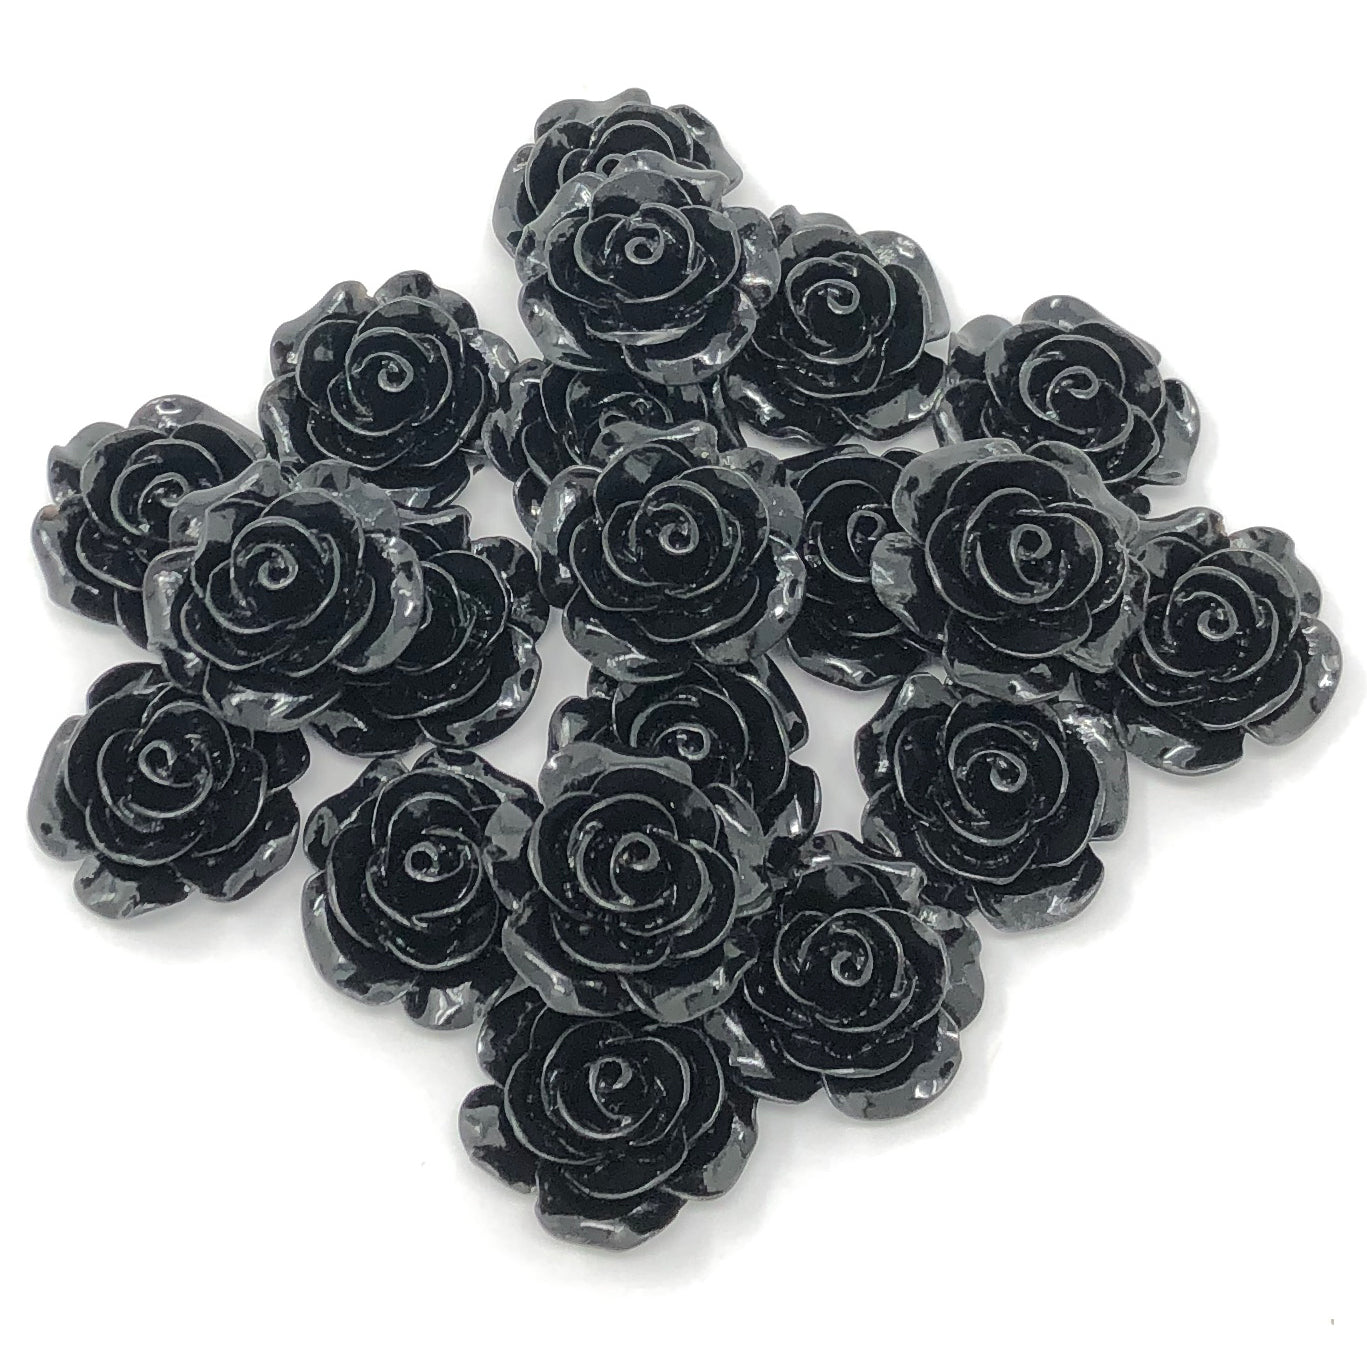 Black 20mm Resin Roses Flatbacks - Pack of 20